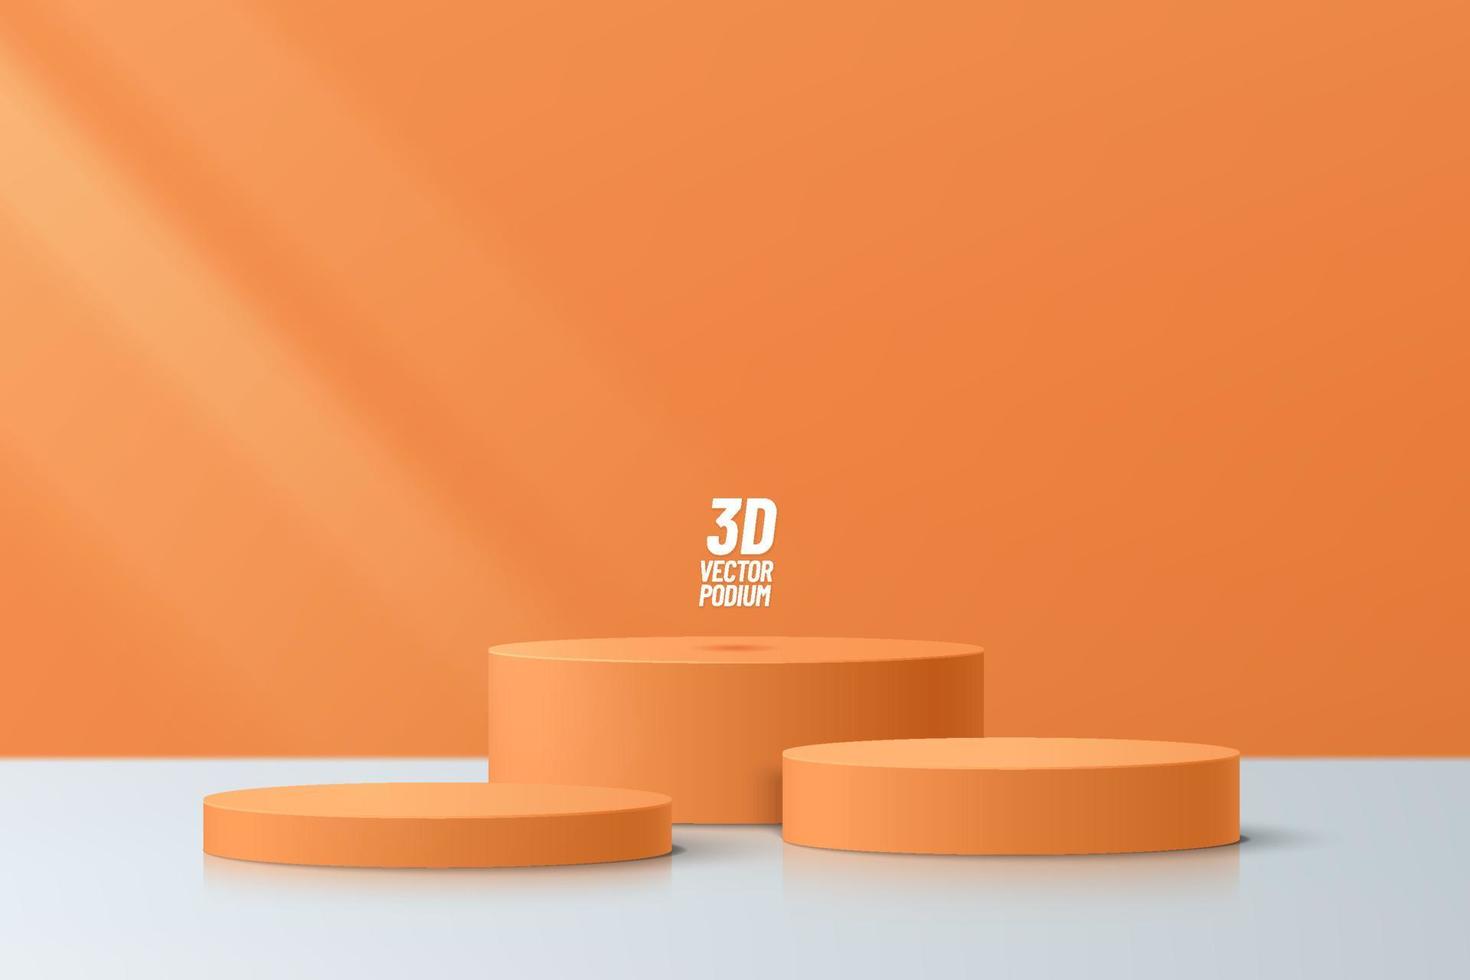 abstrakt orange och vitt 3d-rum med uppsättning realistiska steg orange cylinder piedestal podium. minimal väggscen för produktpresentation. vektor rendering geometriska former. scenshowcase.